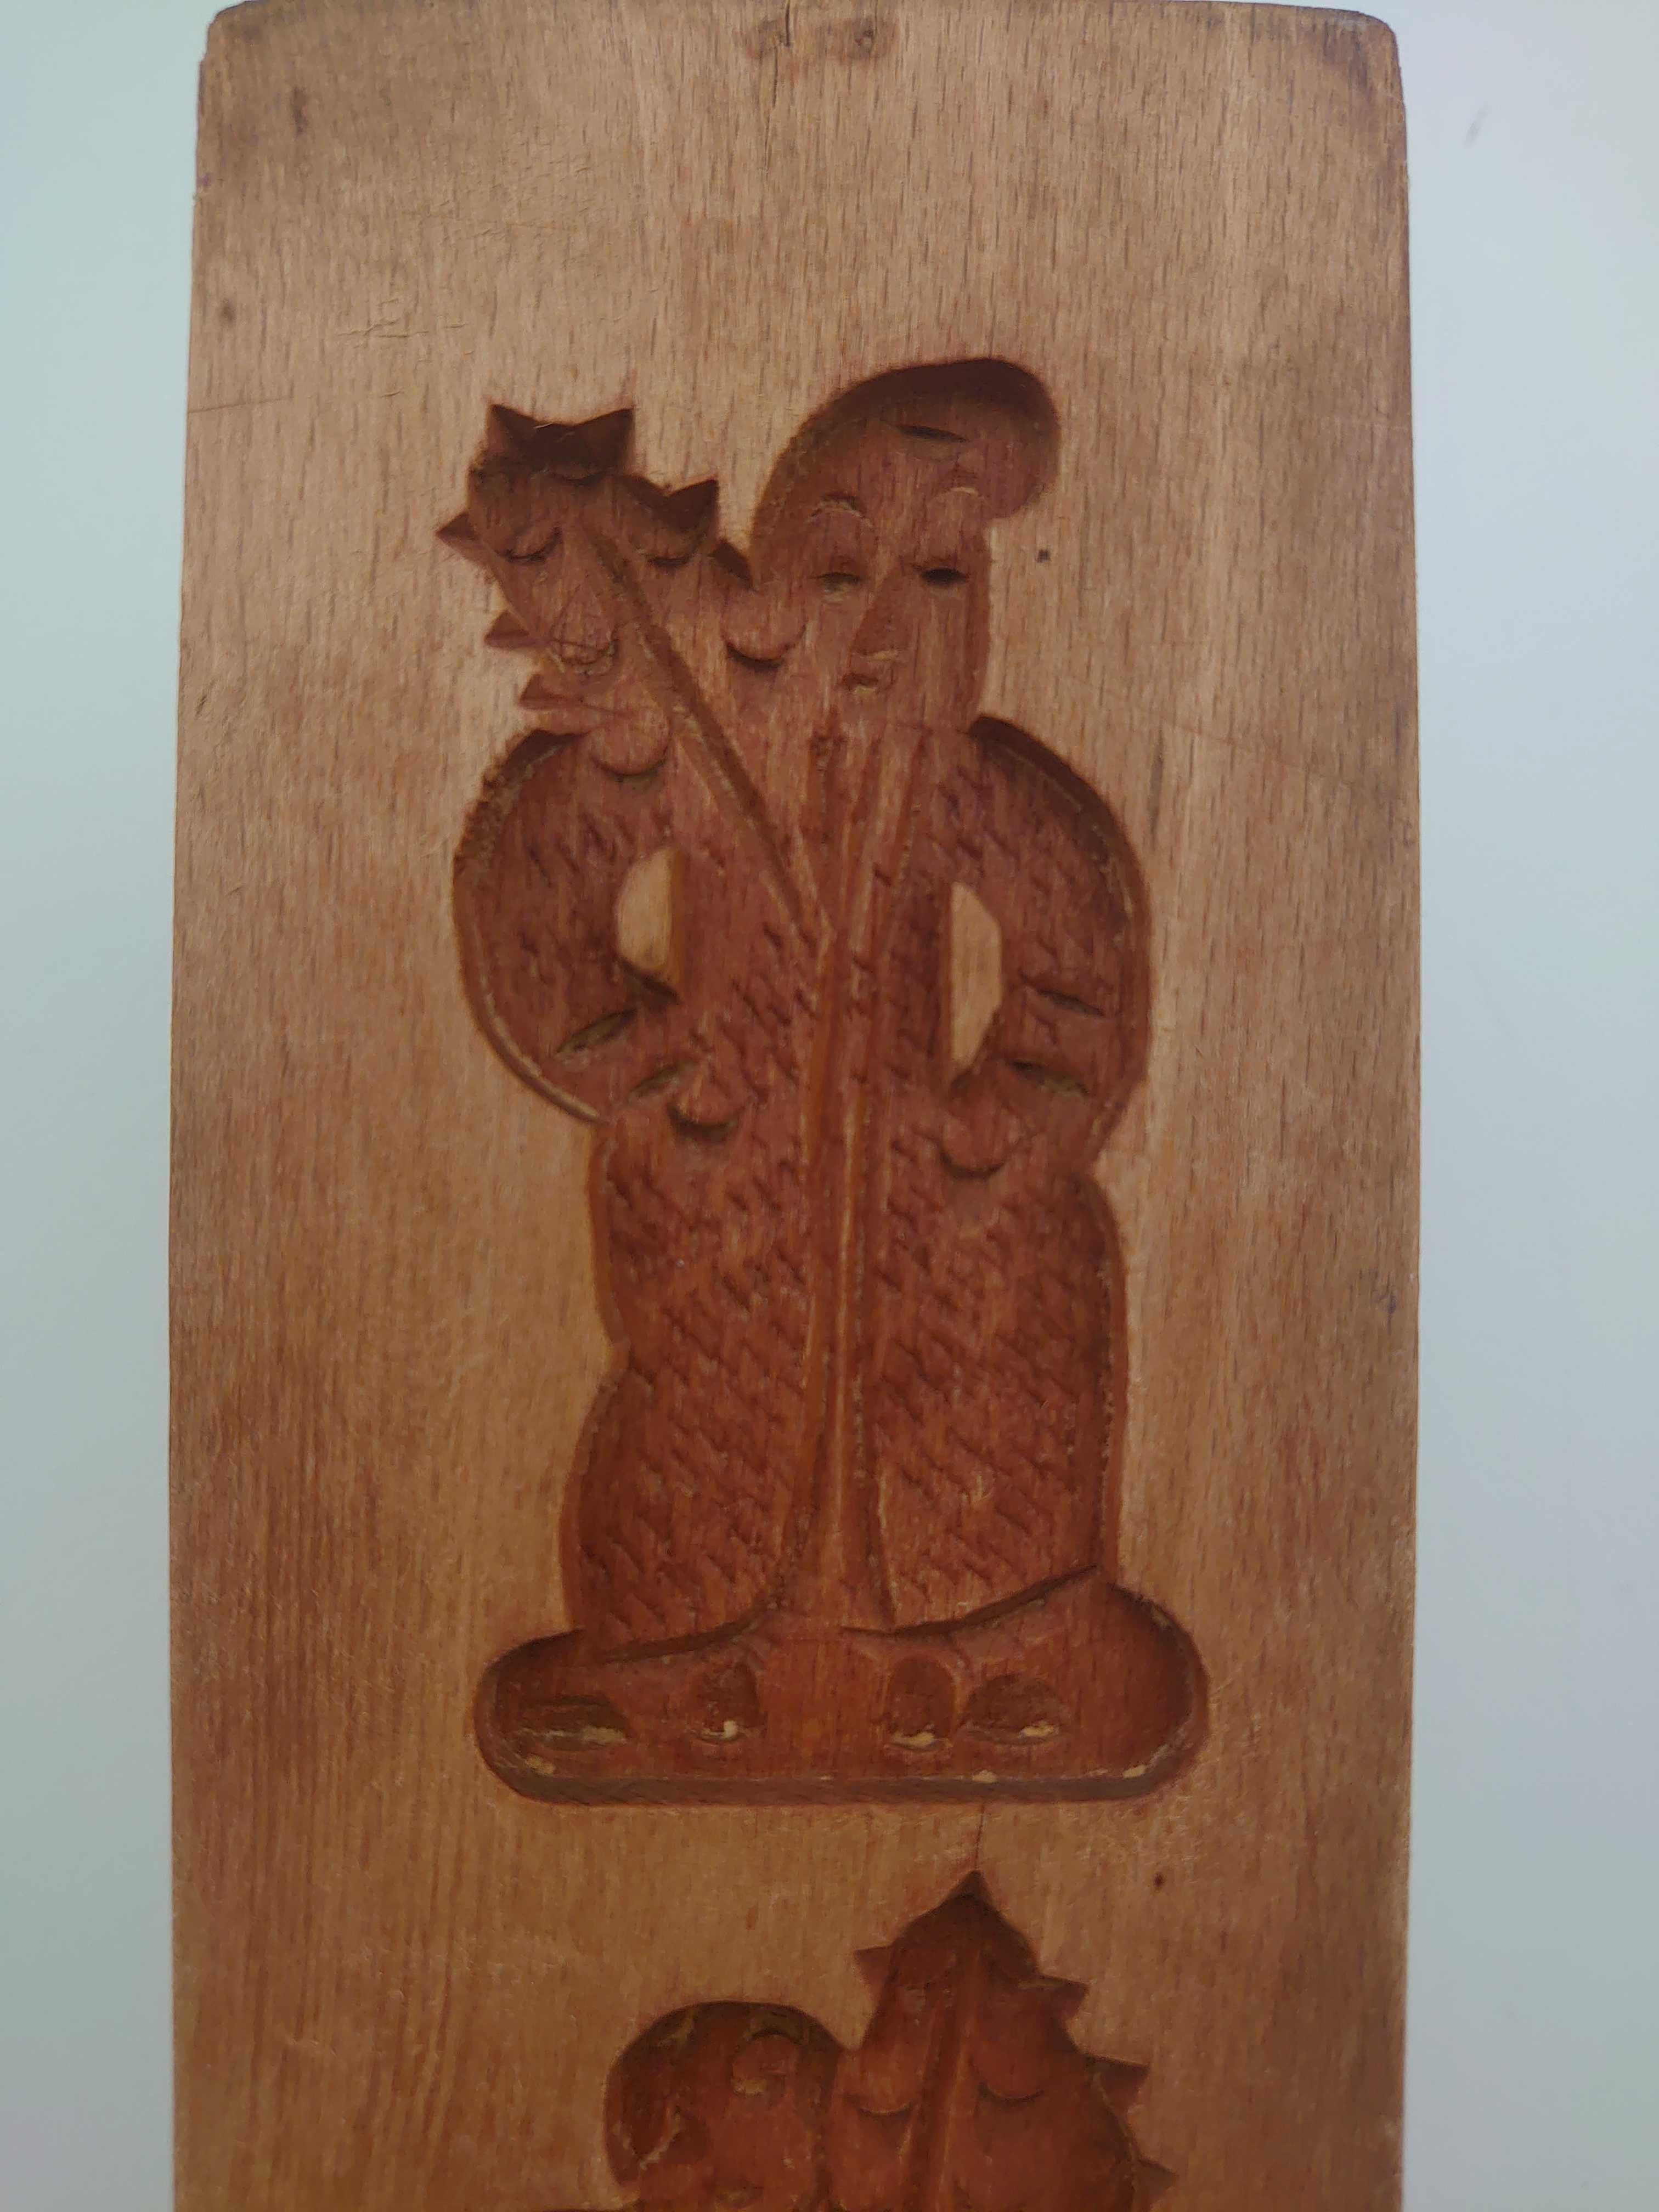 Forma drewniana do ciastek - kobieta i mężczyzna z plonami, winogron